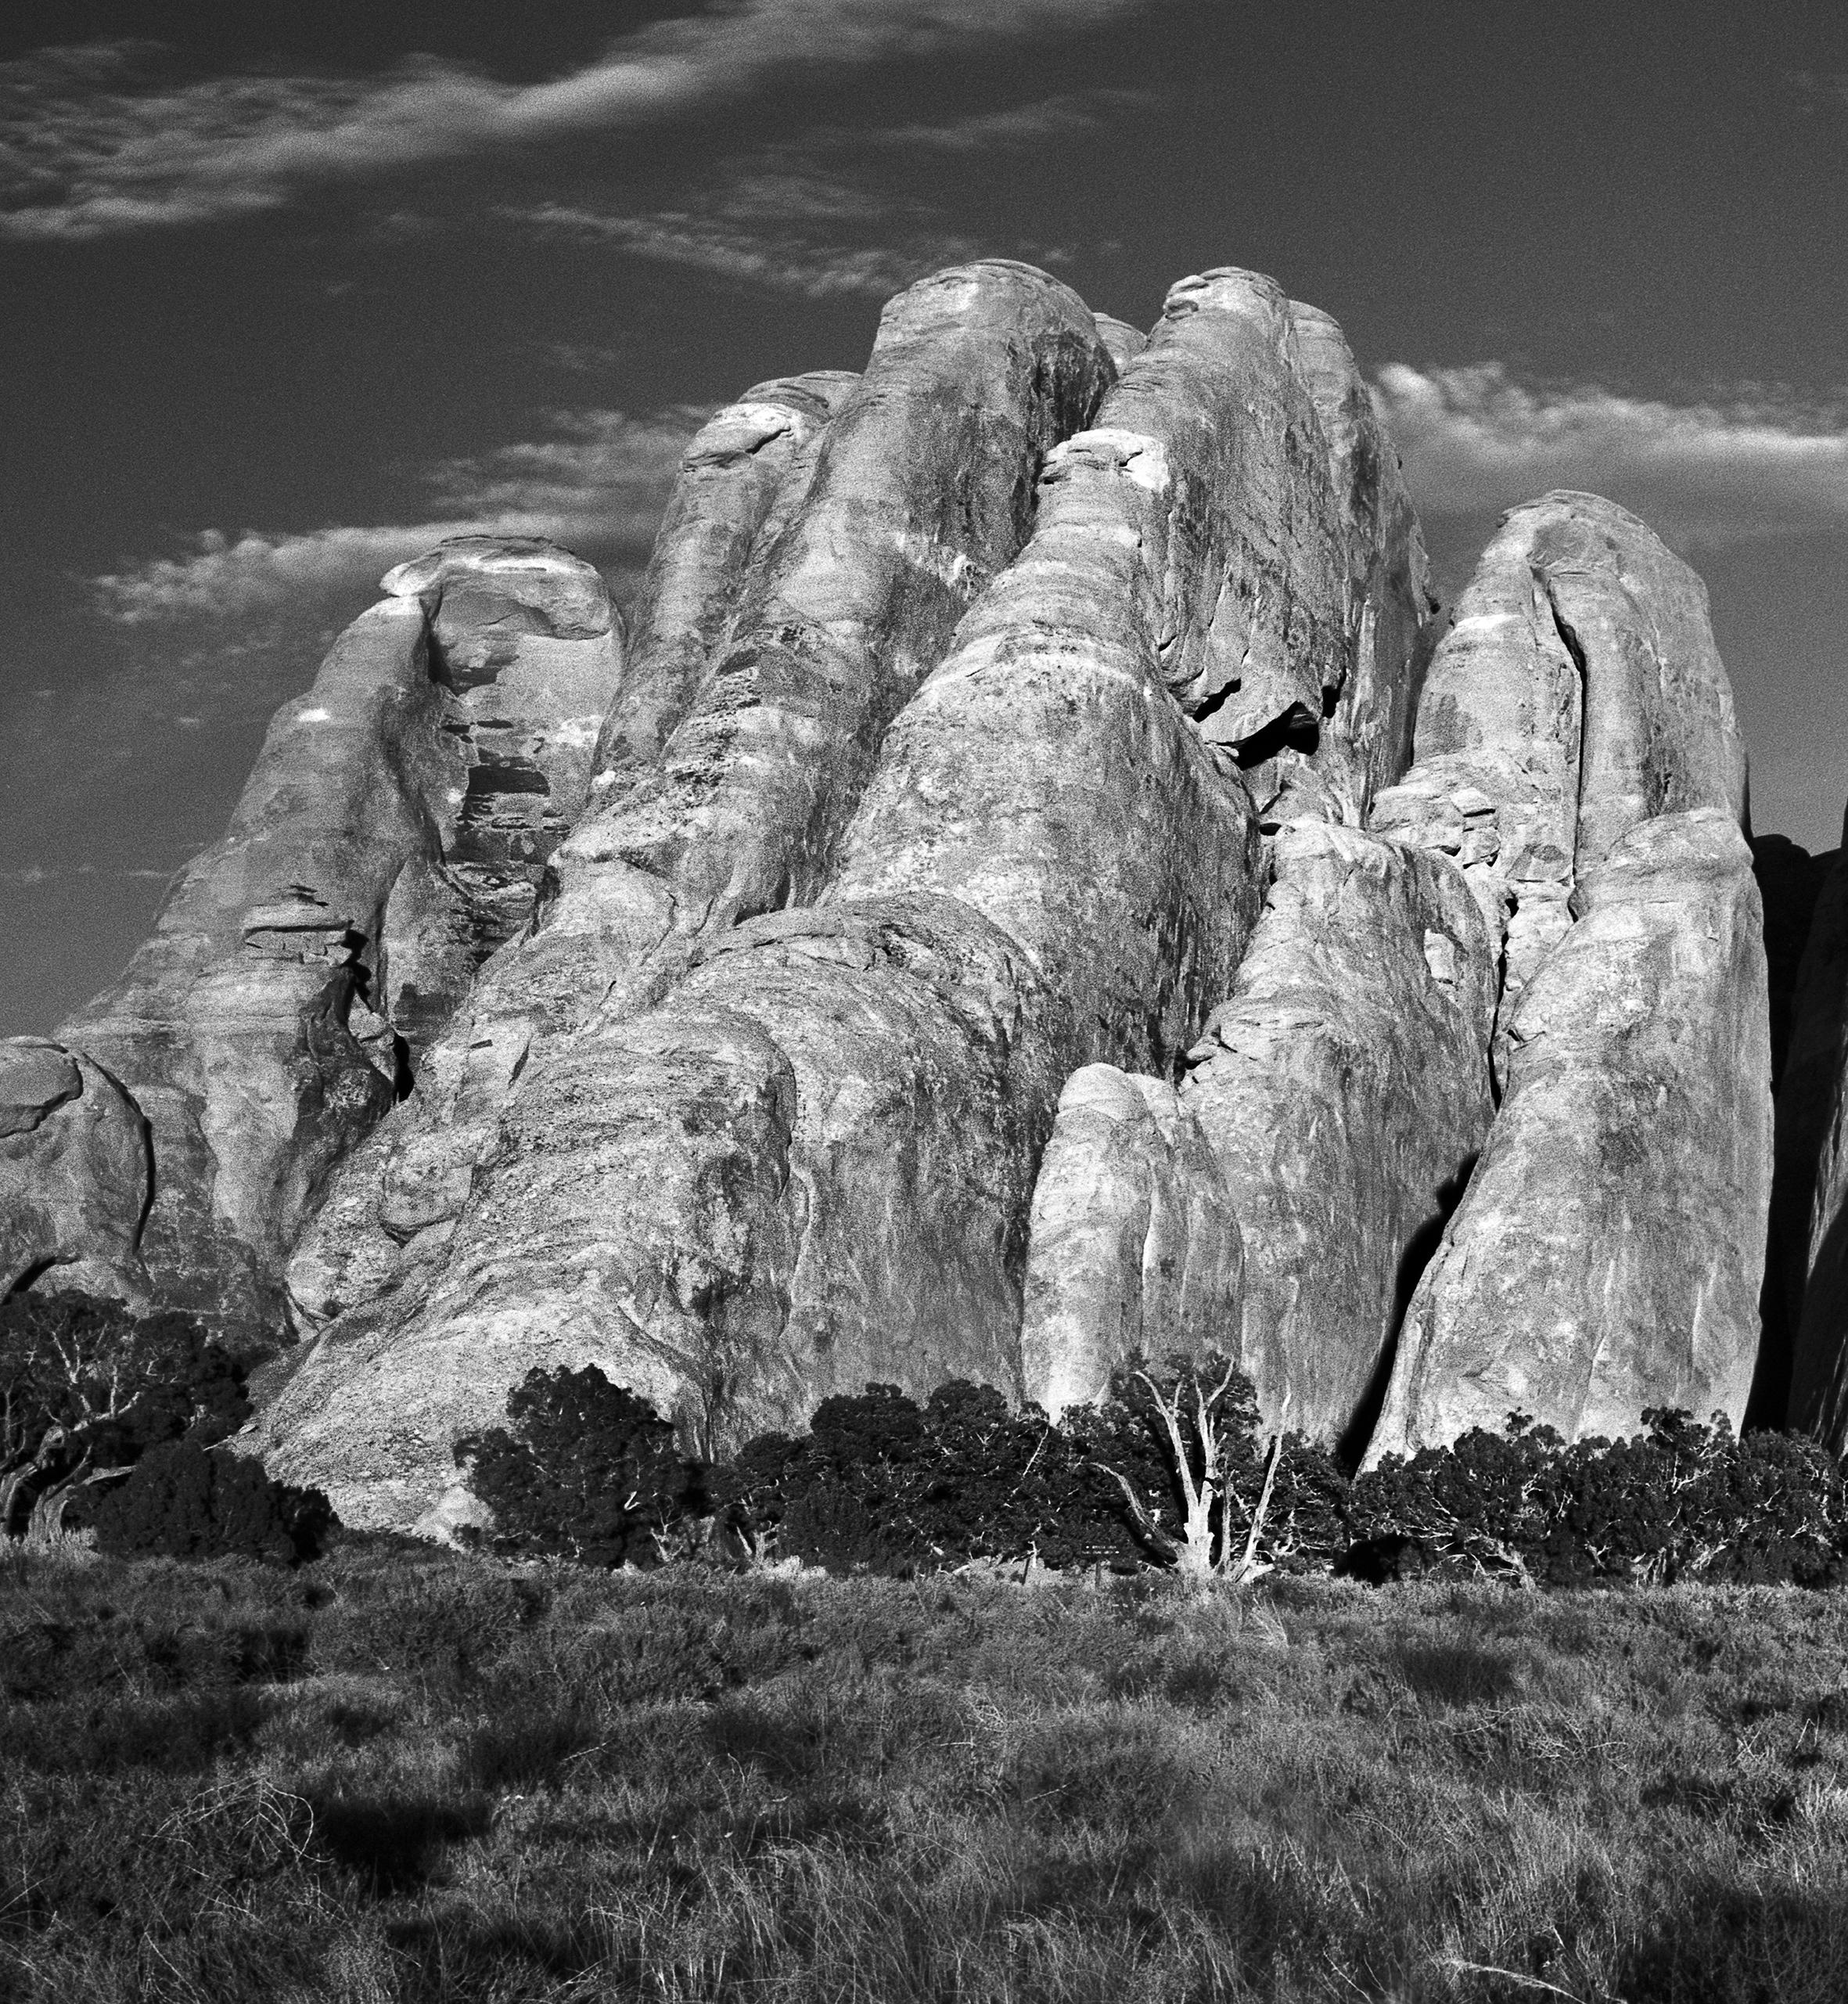 Sand Dune Arches #2- Schwarz-Weiß-Bergbögenfotografie, limitierte Auflage von 20 Stück – Photograph von Ugne Pouwell